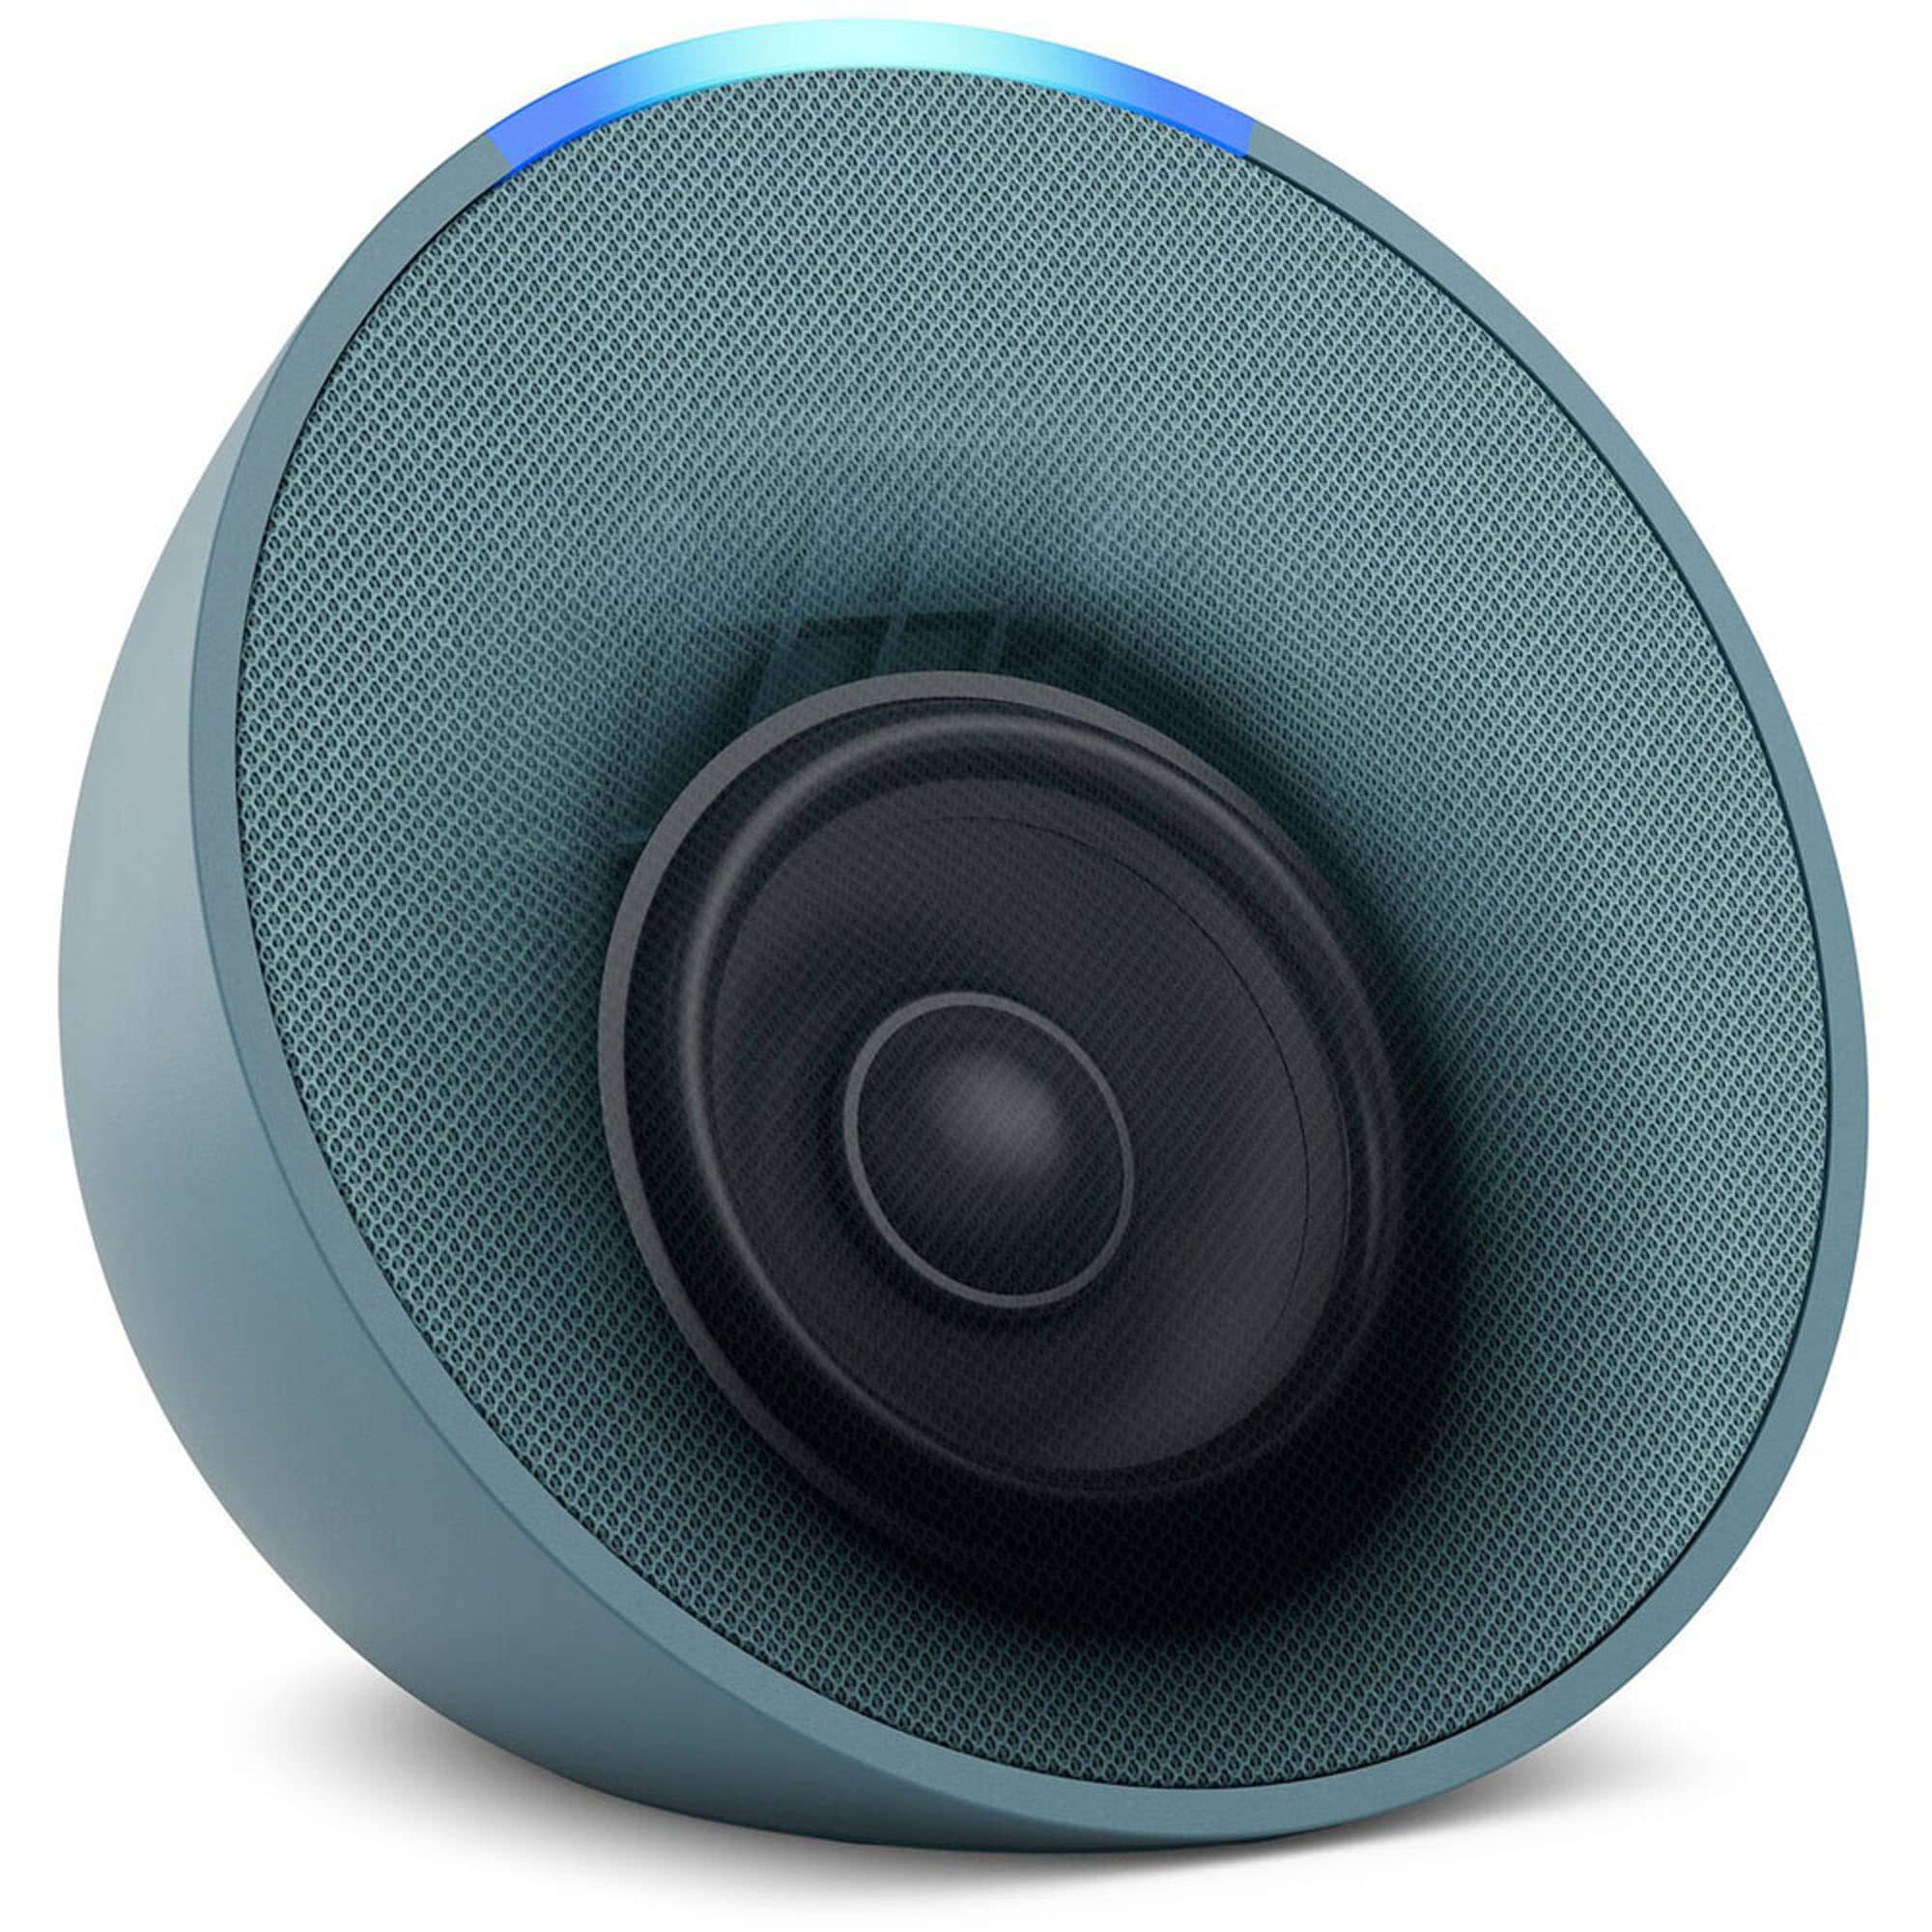 Caixa de som portátil Echo Pop 2023 com Alexa, Smart Speaker, Magalu  Empresas